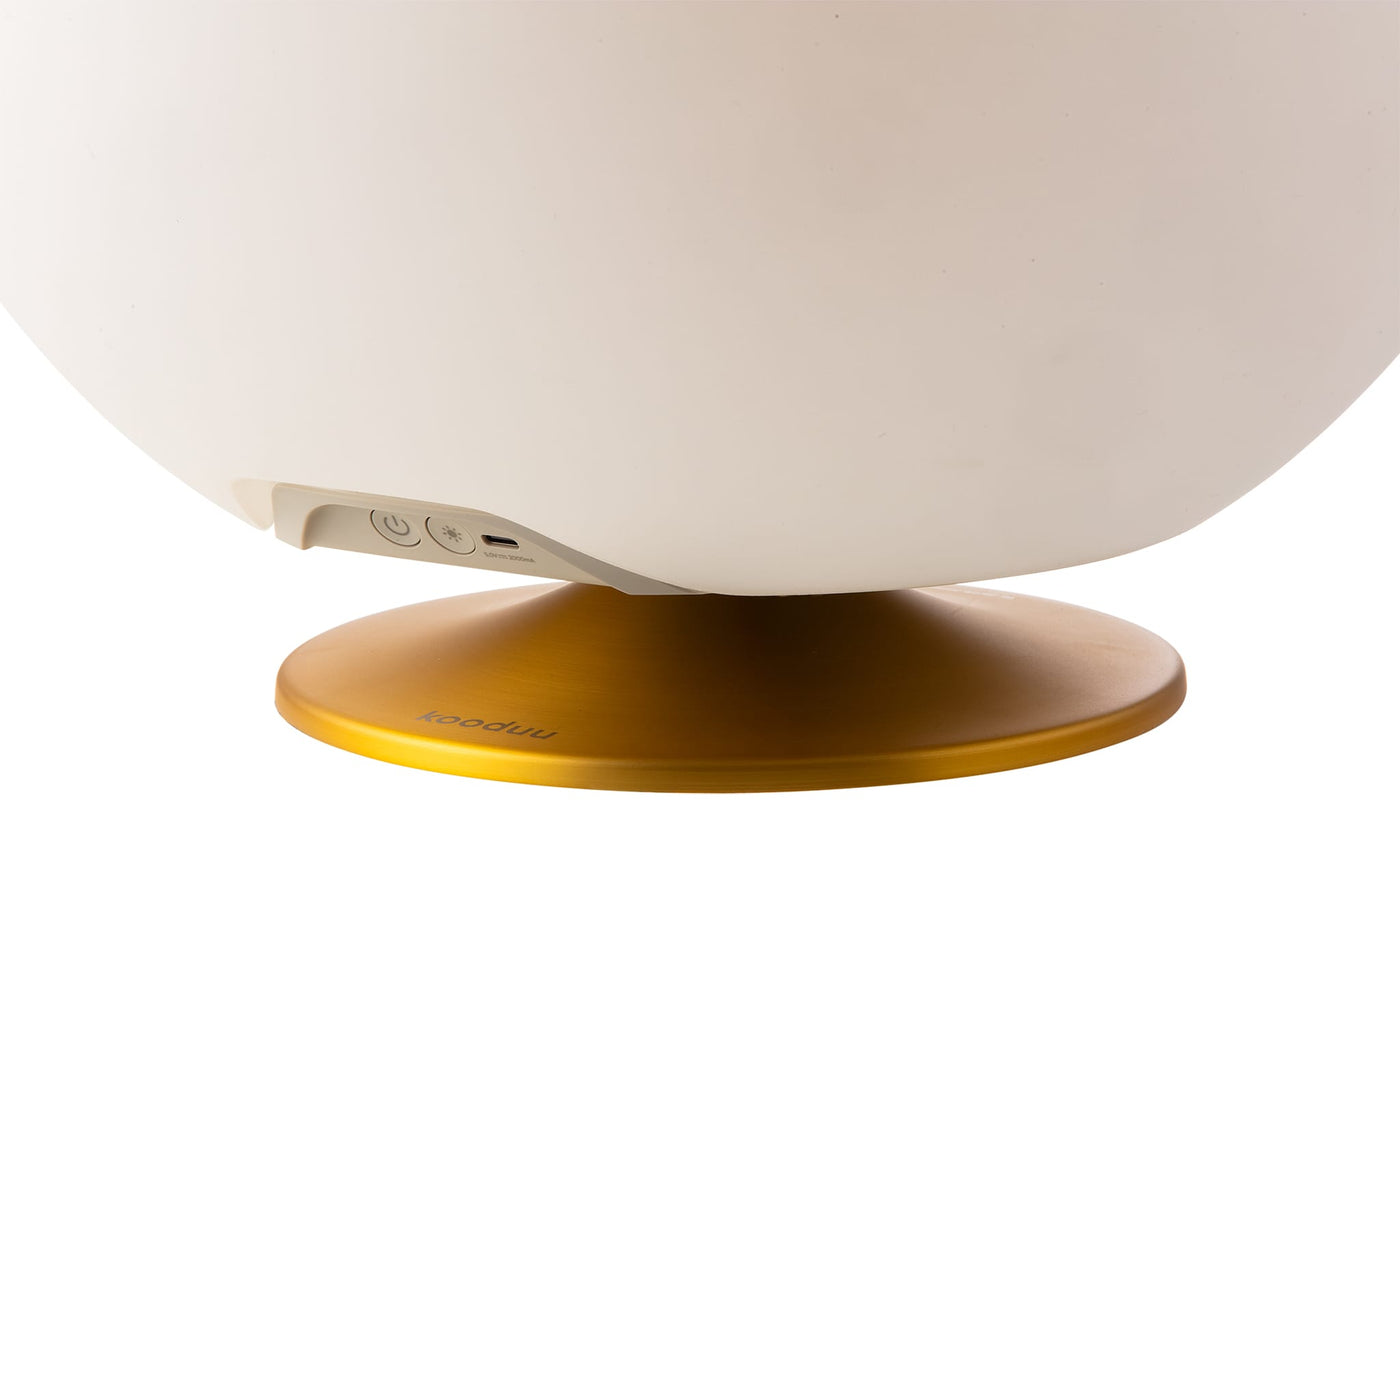 Sphere de kooduu : design contemporain, beaucoup d'espace pour vos boissons et une lumière douce pour une ambiance parfaite.